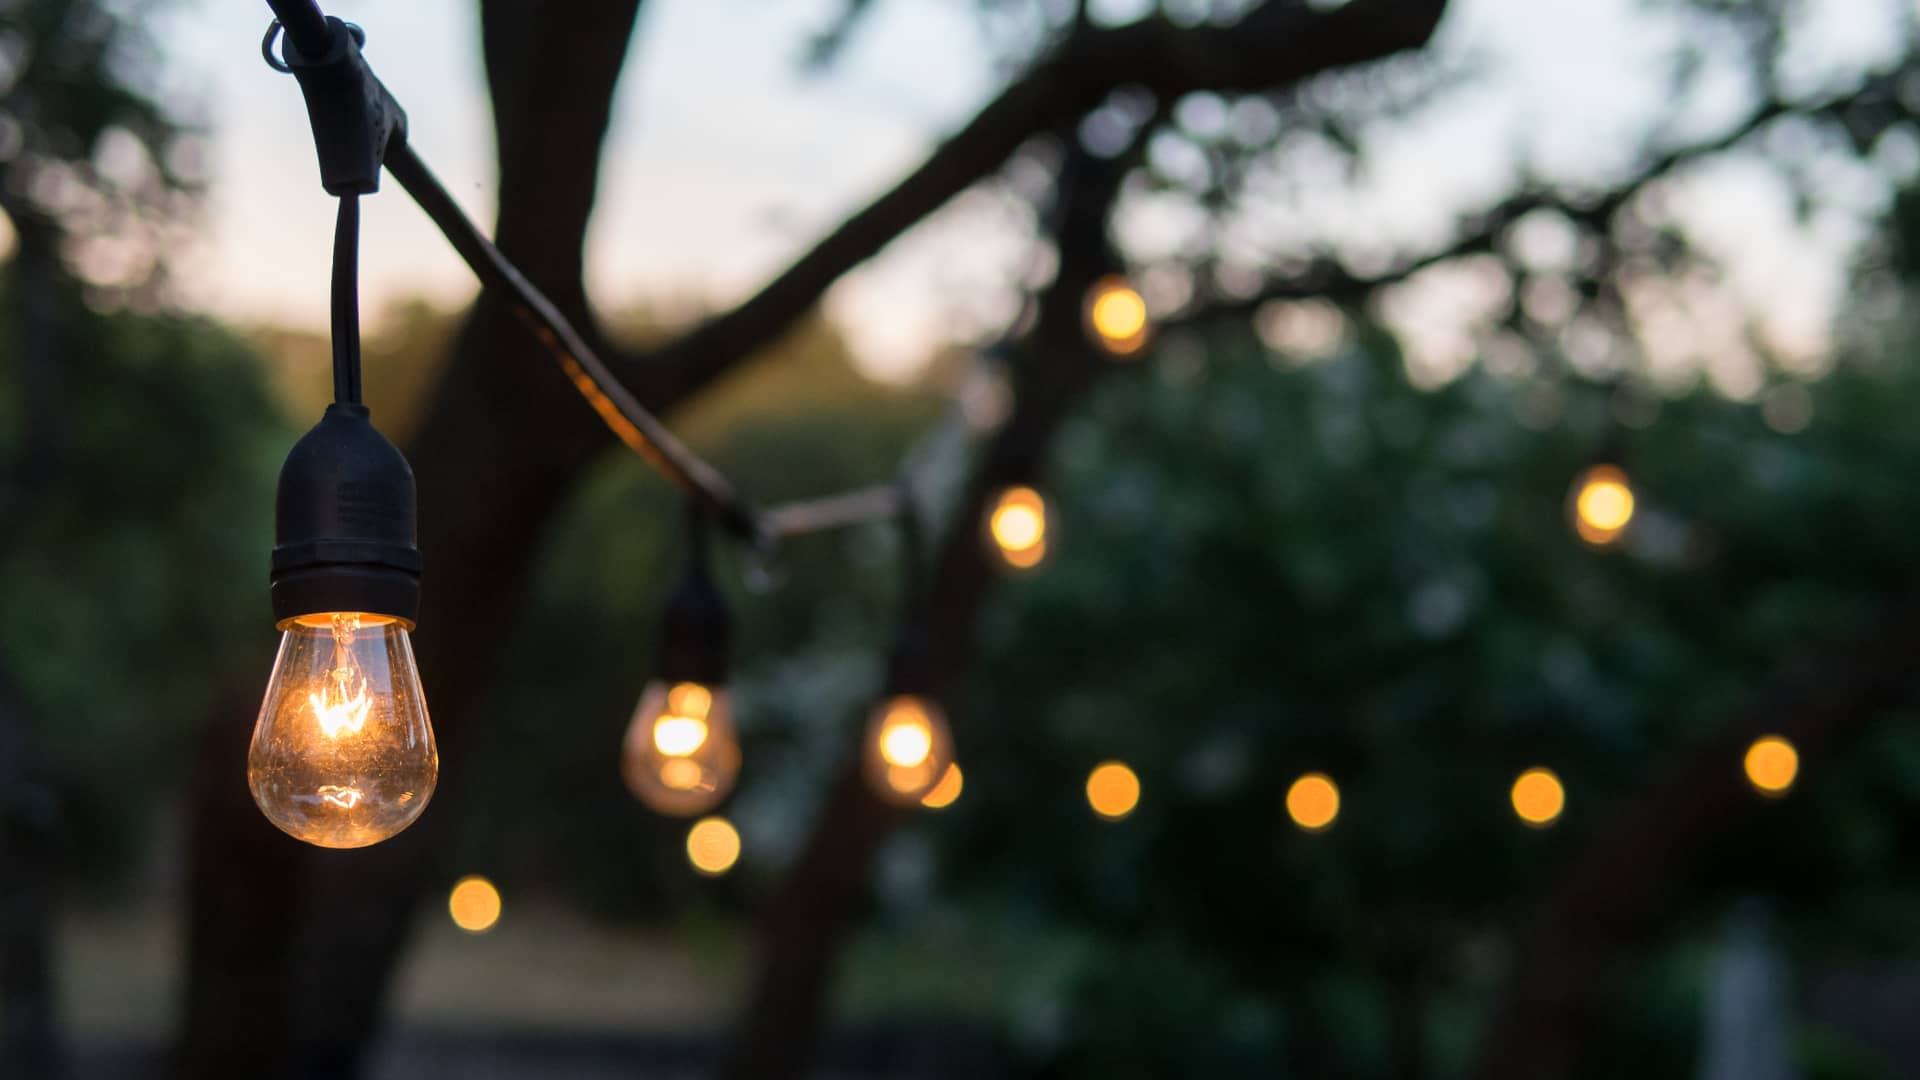 bombillas de tipo antiguo en un jardin que representan las tarifas plana zen de la empresa naturgy